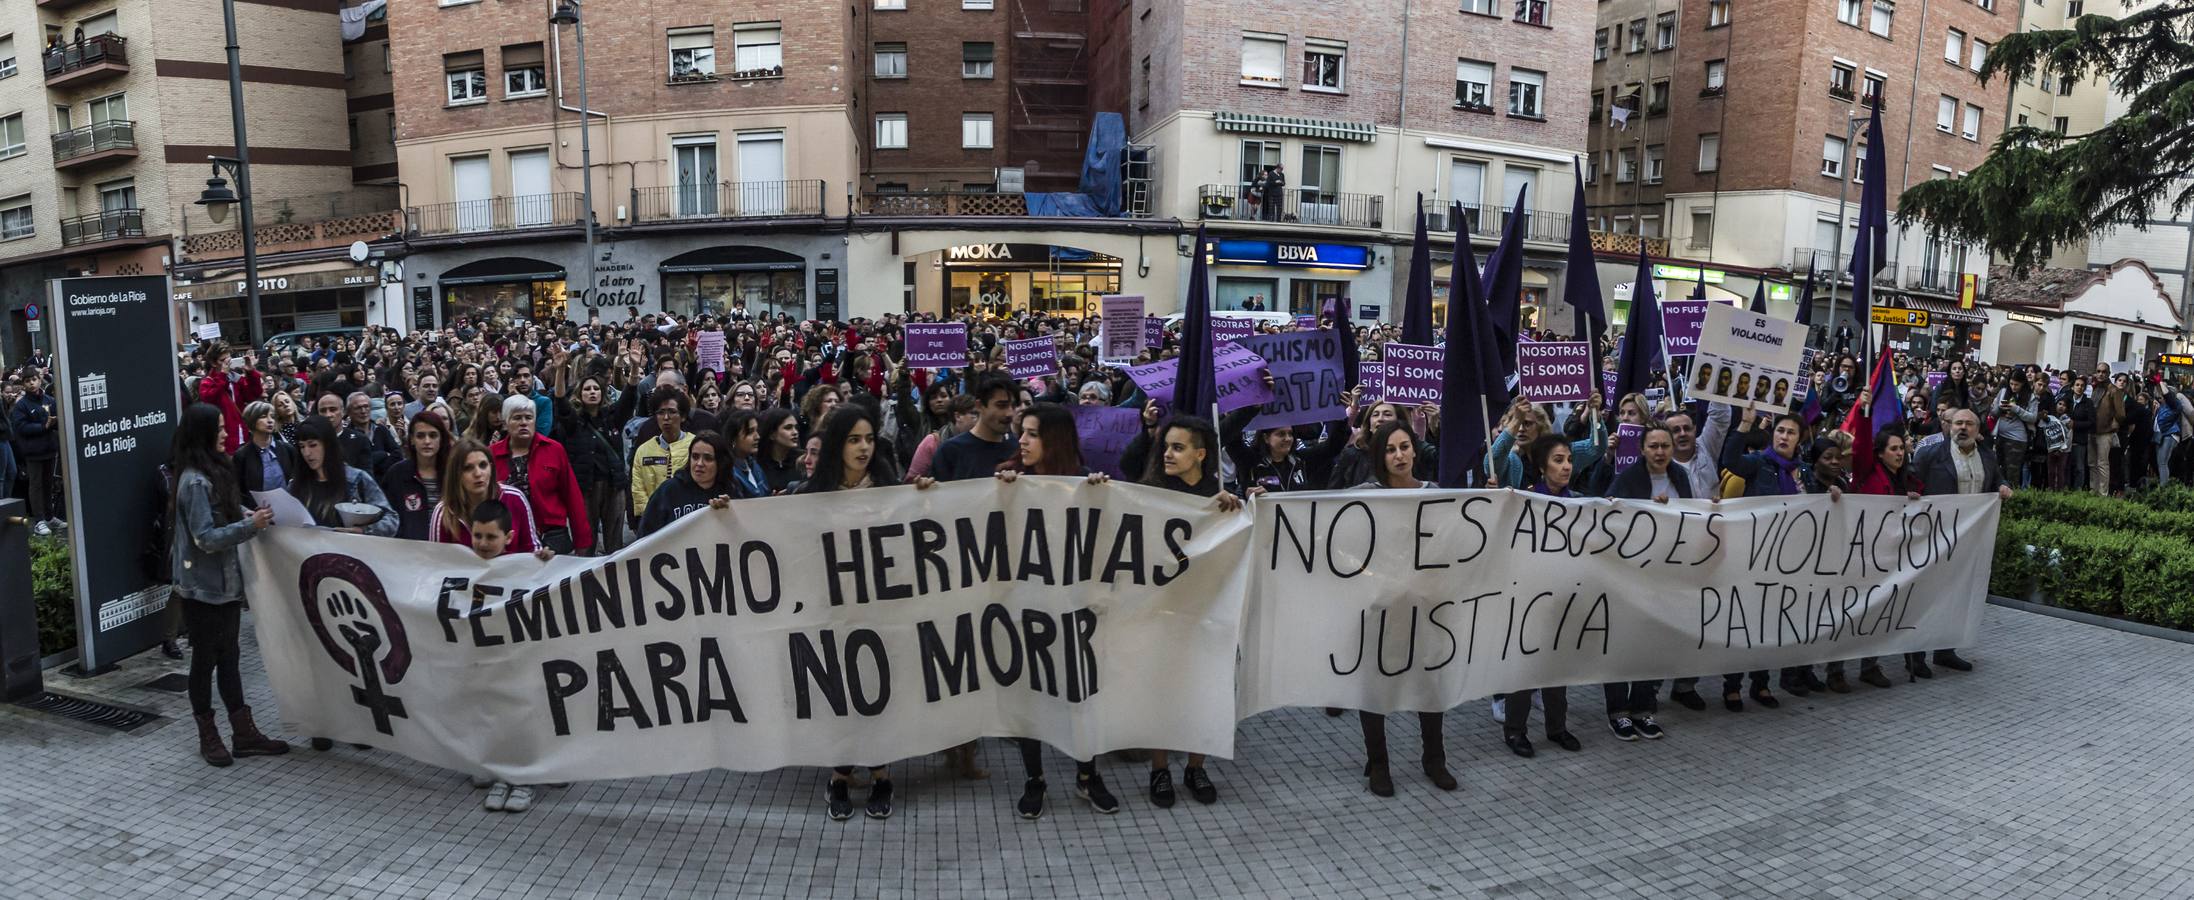 Fotos: Logroño clama contra la decisión sobre &#039;la manada&#039;